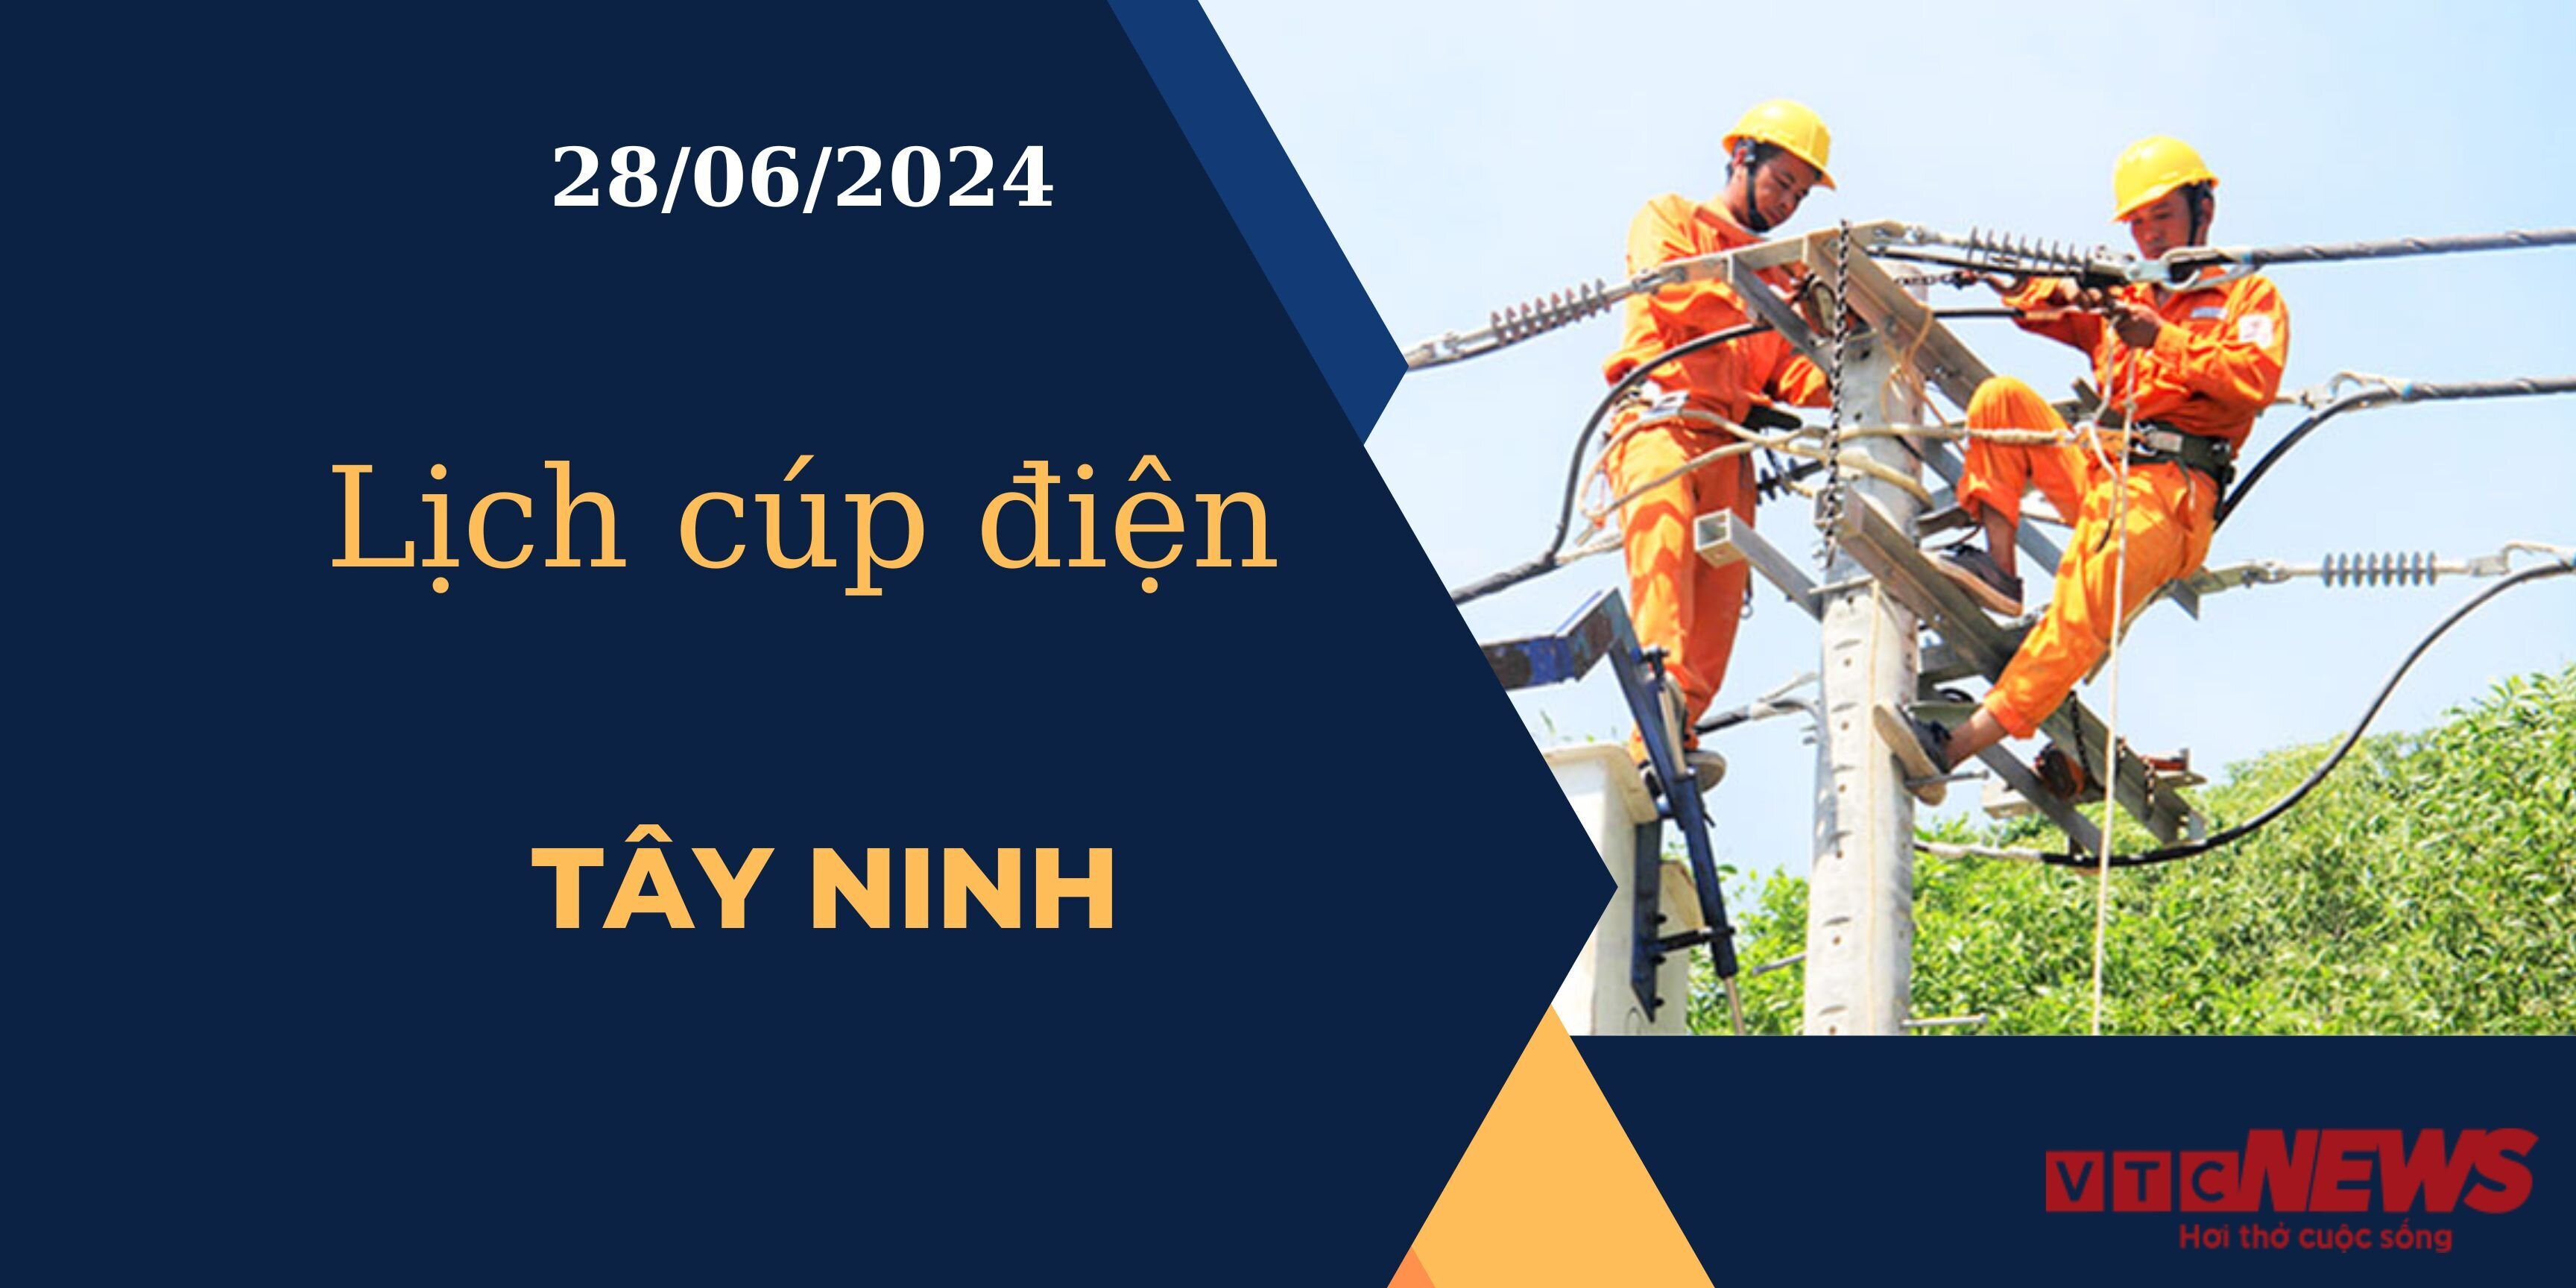 Lịch cúp điện hôm nay ngày 28/06/2024 tại Tây Ninh